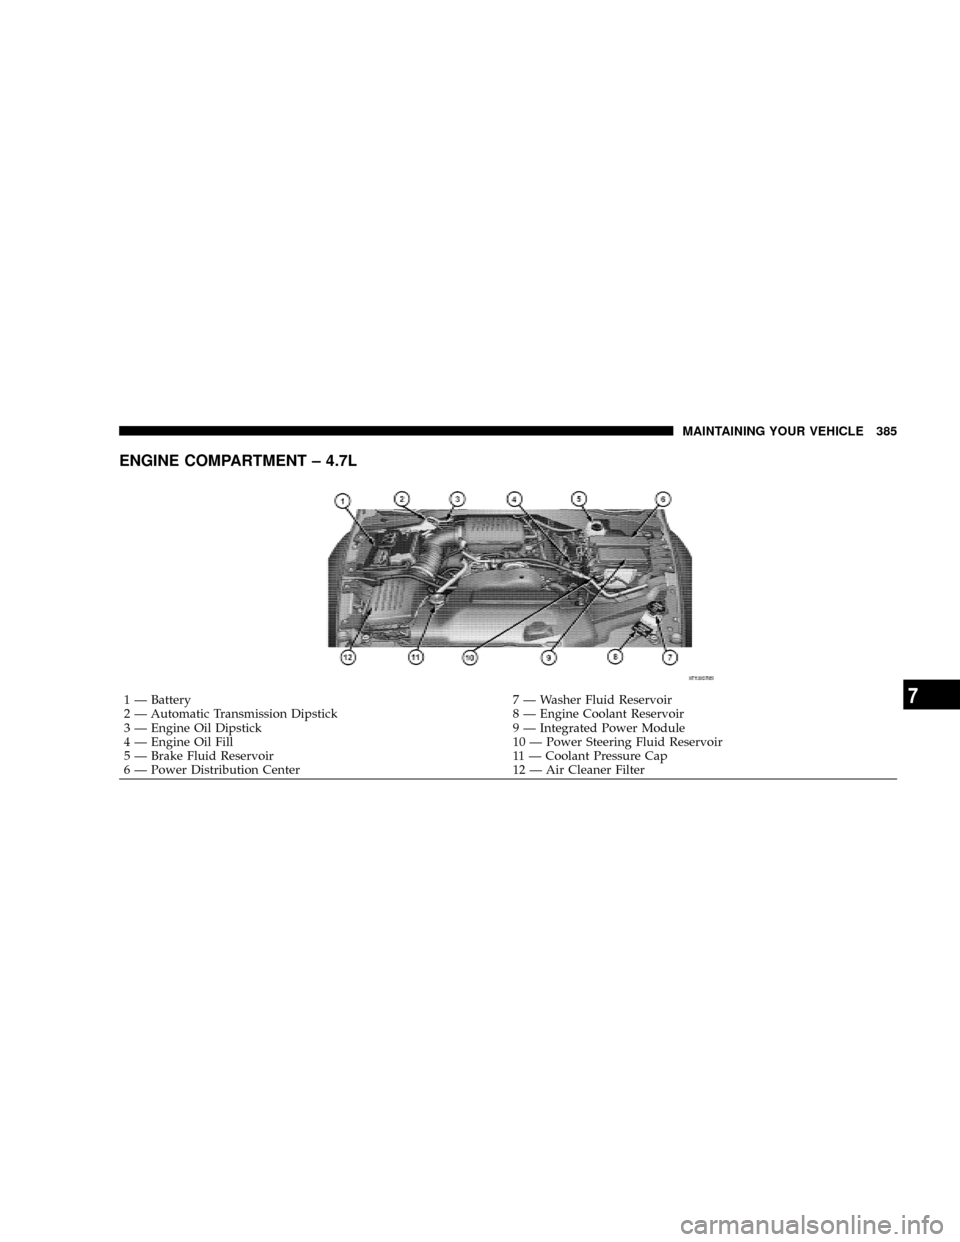 CHRYSLER ASPEN 2009 2.G Owners Manual ENGINE COMPARTMENT ± 4.7L
1 Ð Battery 7 Ð Washer Fluid Reservoir
2 Ð Automatic Transmission Dipstick 8 Ð Engine Coolant Reservoir
3 Ð Engine Oil Dipstick 9 Ð Integrated Power Module
4 Ð Engine